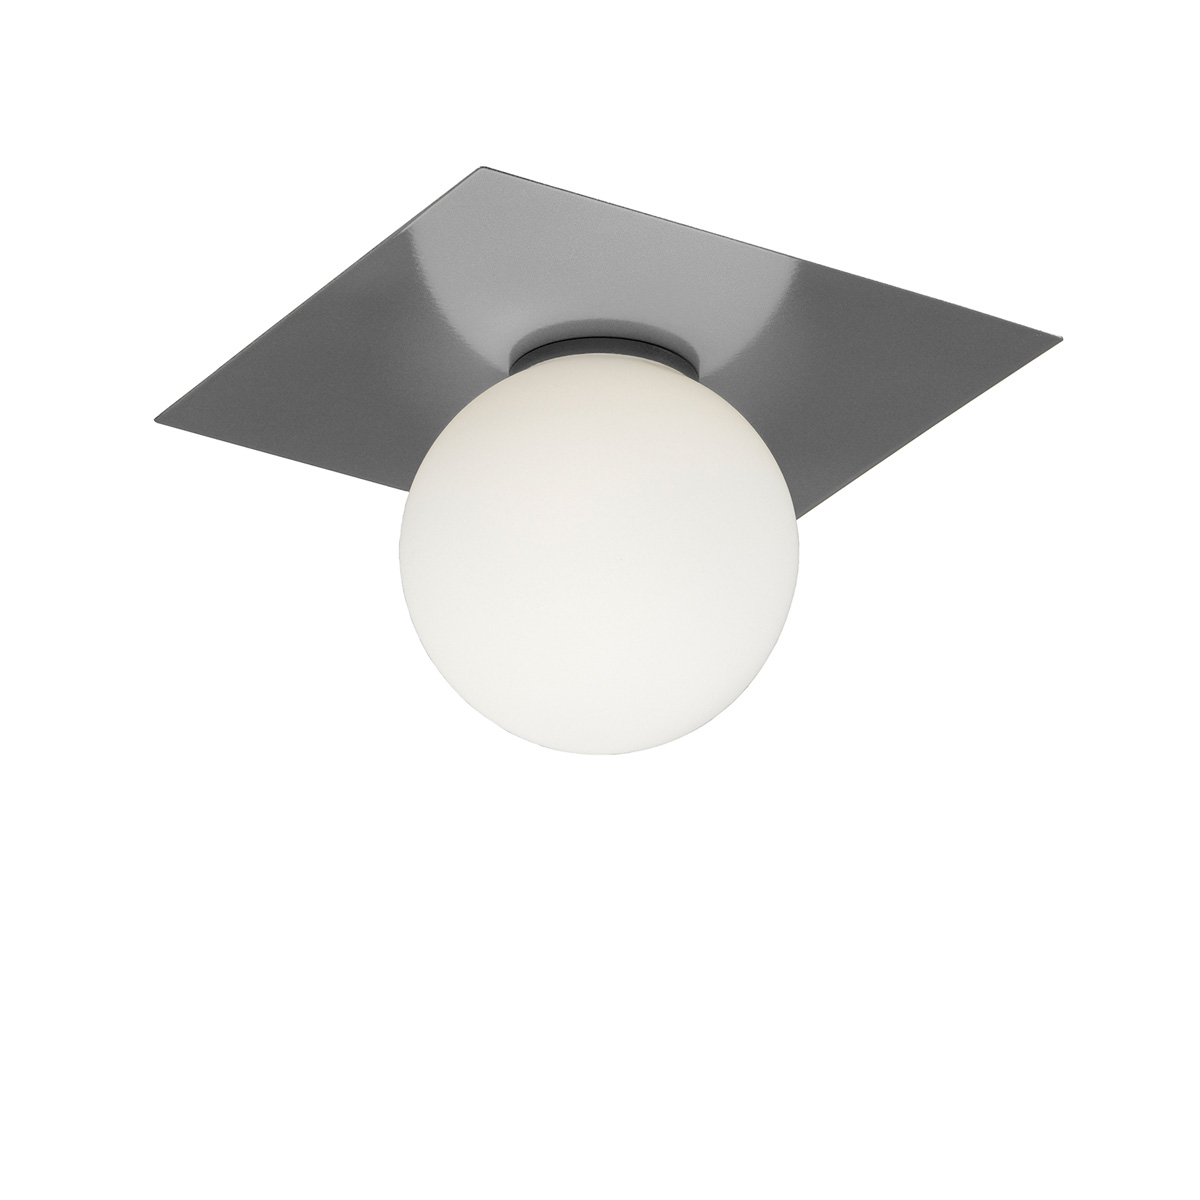 Μονόφωτο φωτιστικό οροφής με μπάλα ΜΠΑΛΕΣ glass ceiling ball